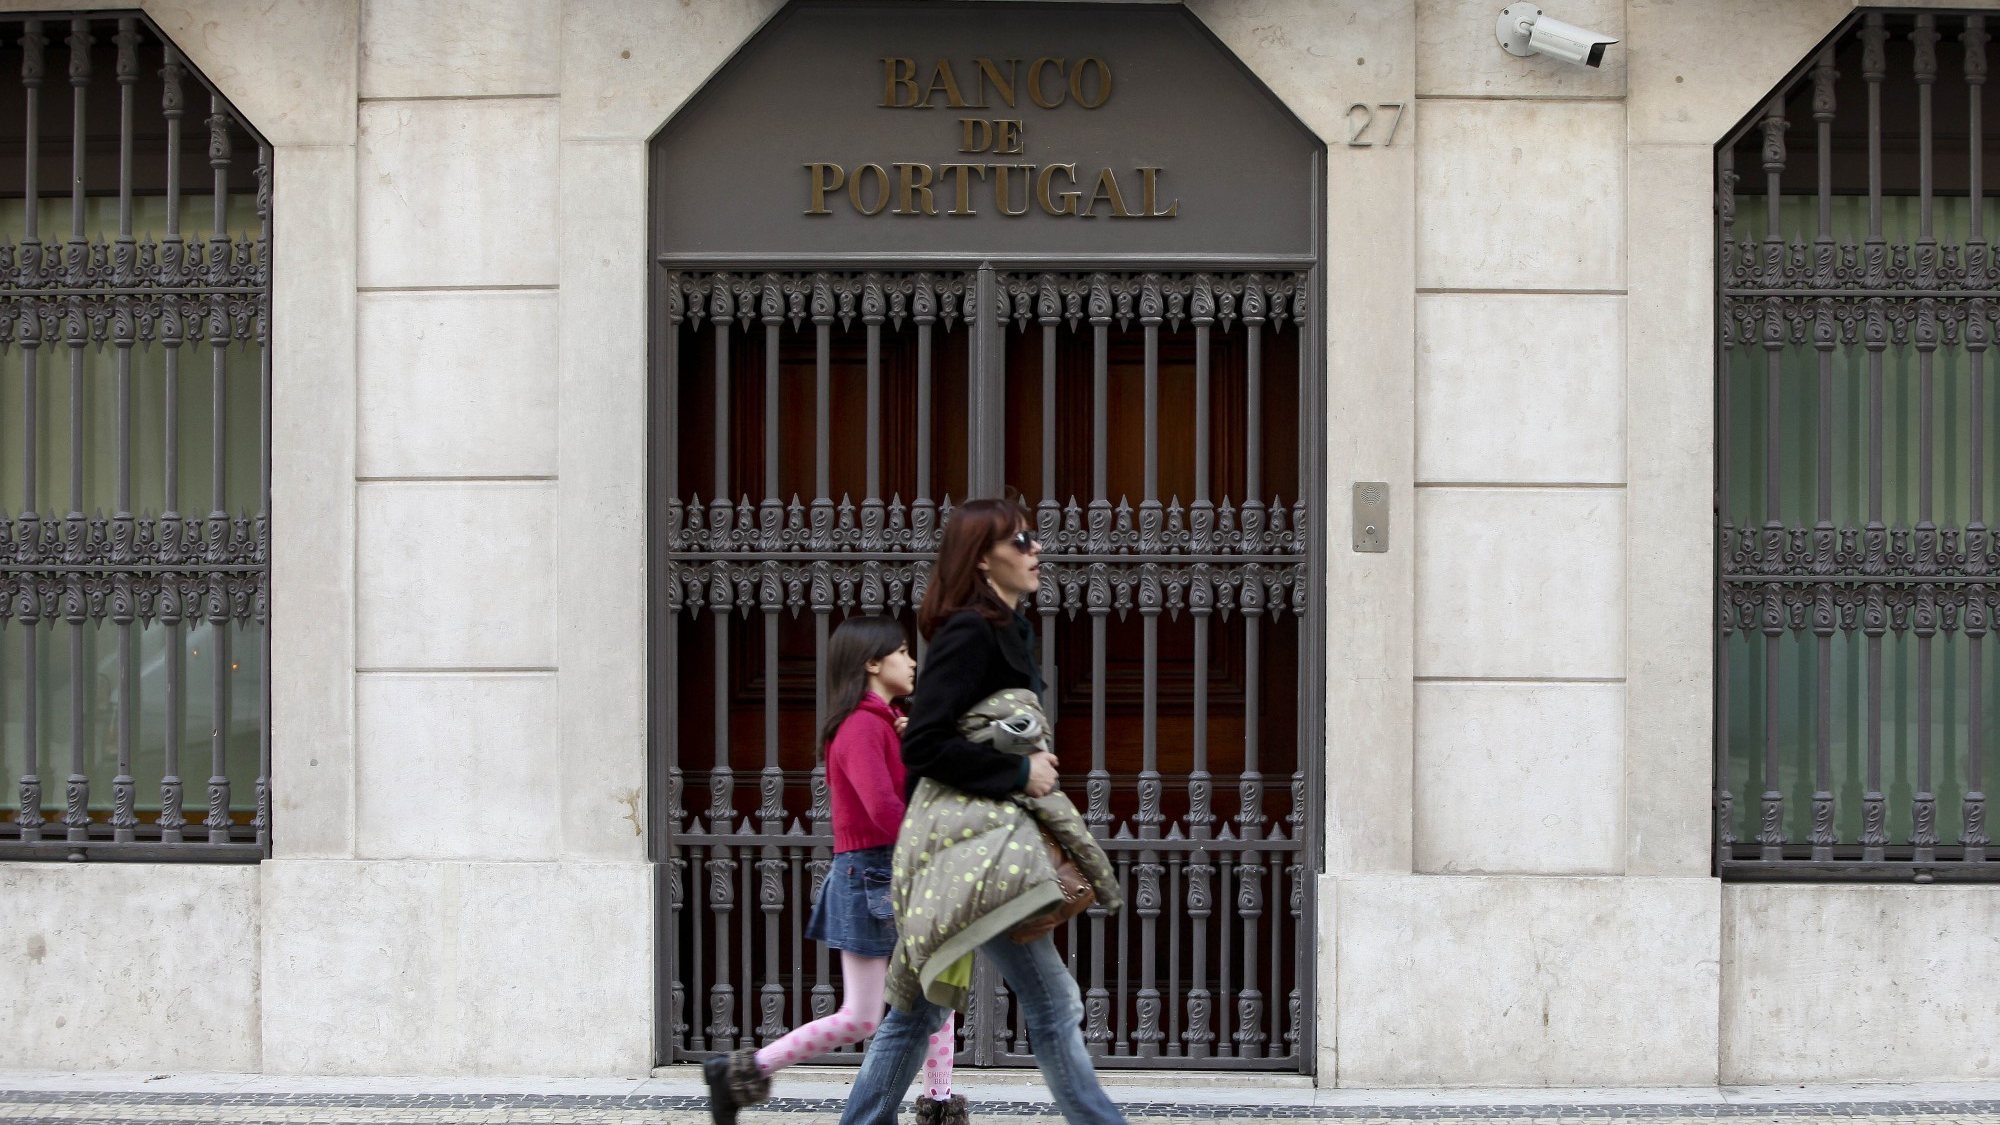 O Banco de Portugal avisa ainda que as listas das entidades autorizadas a conceder crédito e a atuar como intermediários de crédito e consultor sobre contratos de crédito podem ser consultadas no site do Banco de Portugal e no Portal do Cliente Bancário